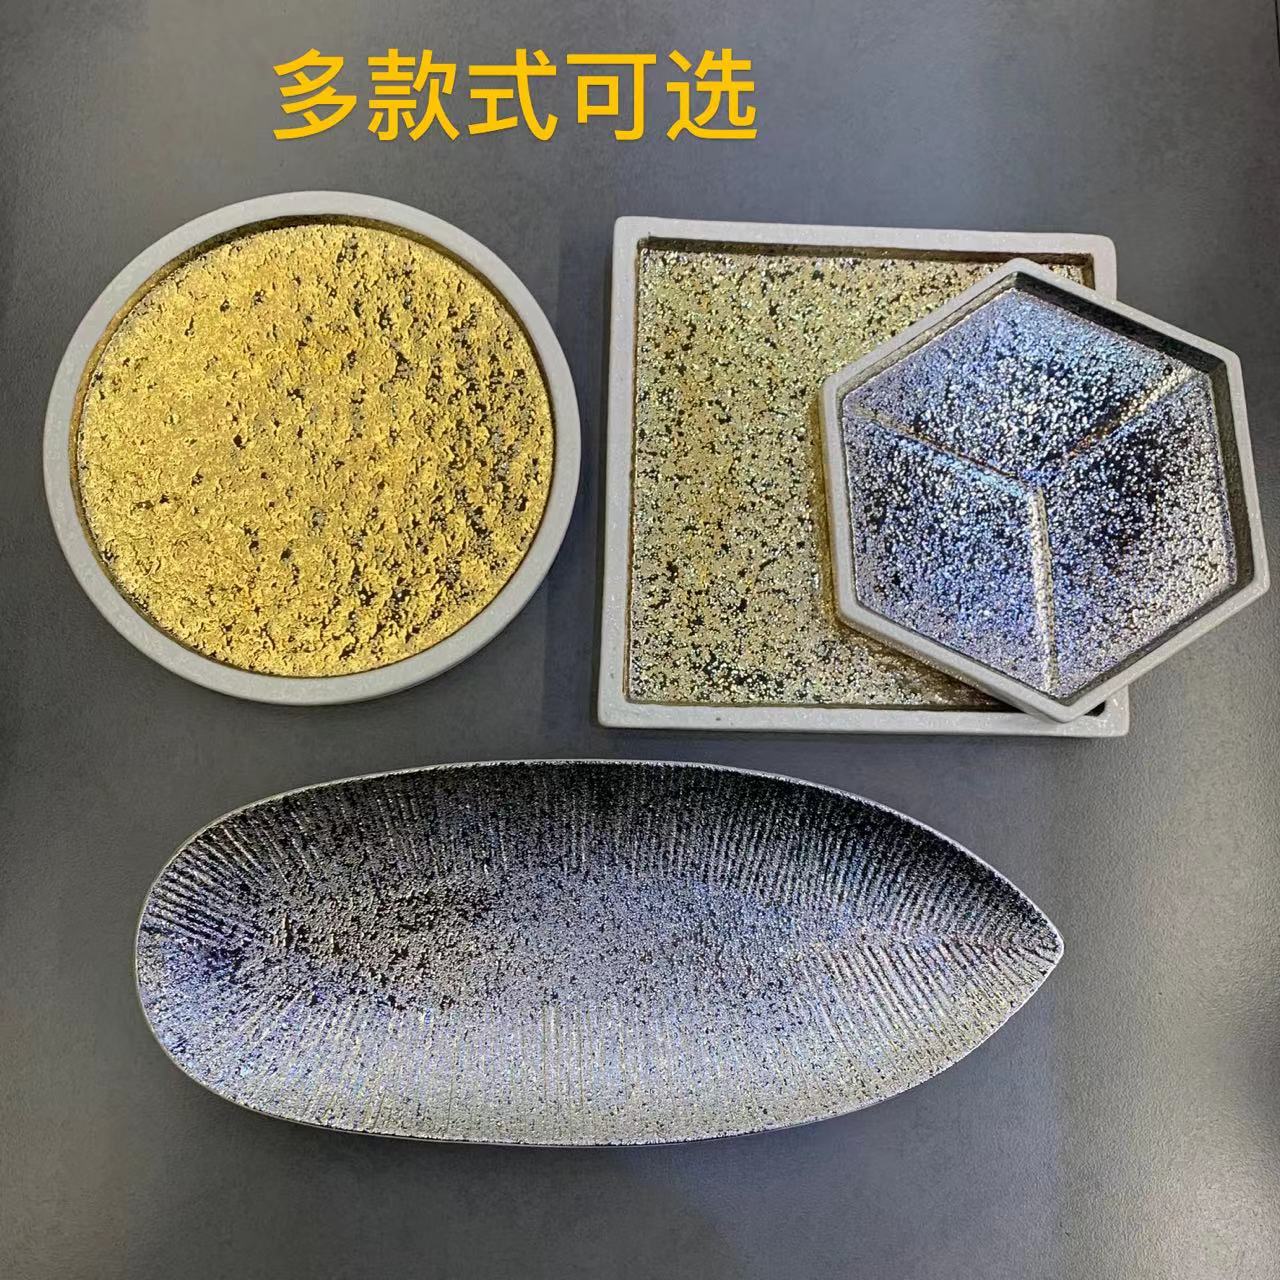 日式正方盘不规则盘创意陶瓷盘寿司刺身盘板前烧鸟盘料理陶瓷盘